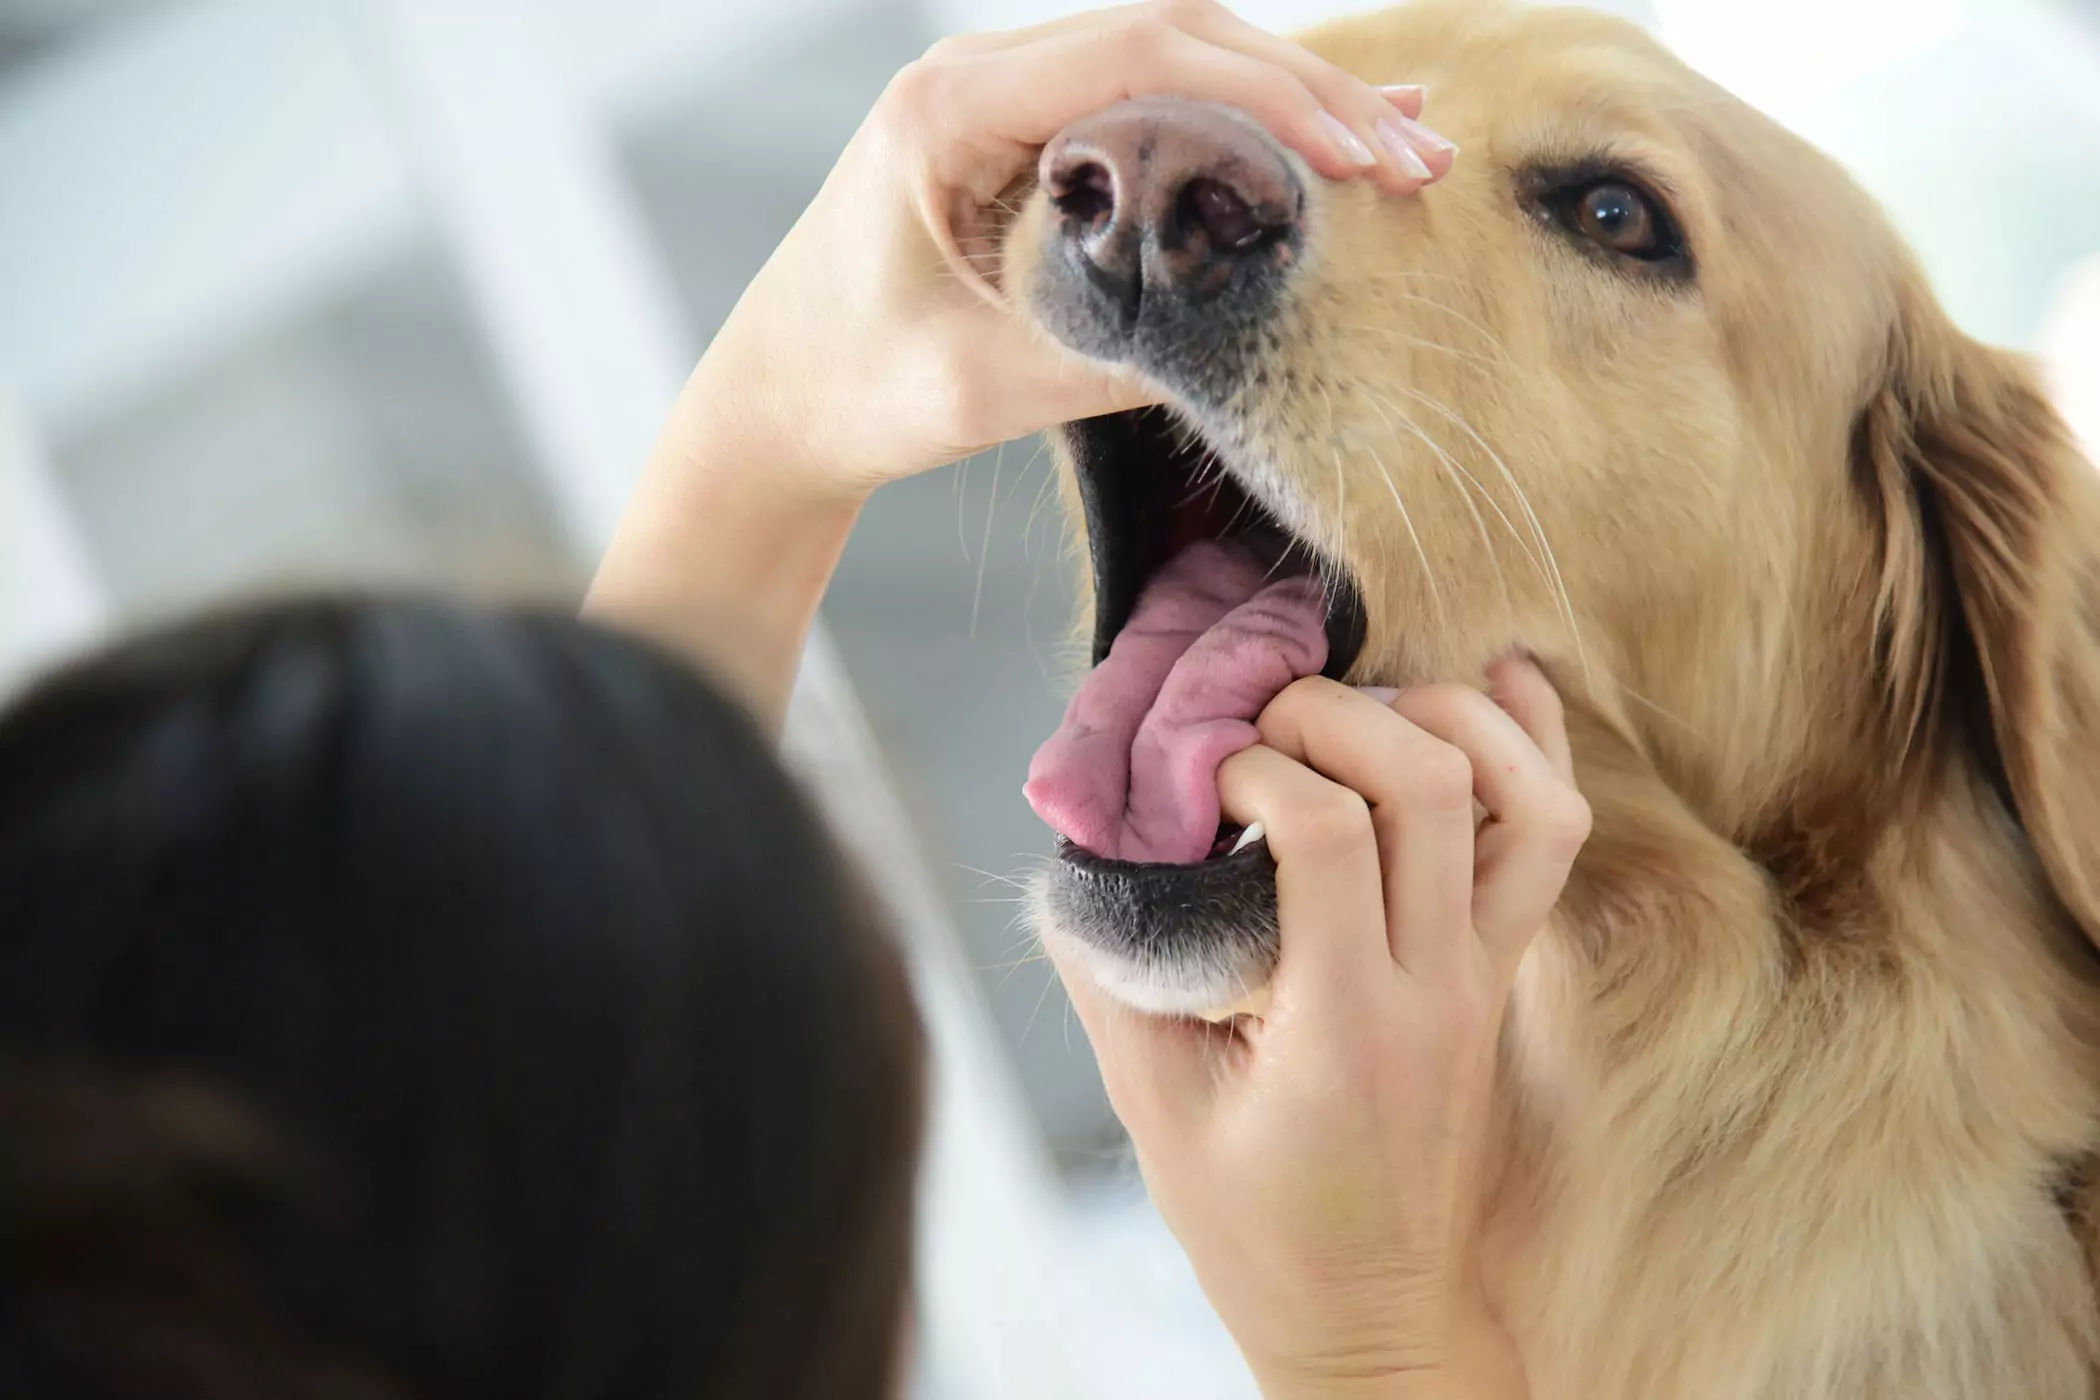 Ist der Mund eines Hundes sauberer als der eines Menschen? Das Maul eines Hundes ist sauberer als das eines Menschen? Das ist ein gestohlener Begriff, die beiden sind nicht vergleichbar